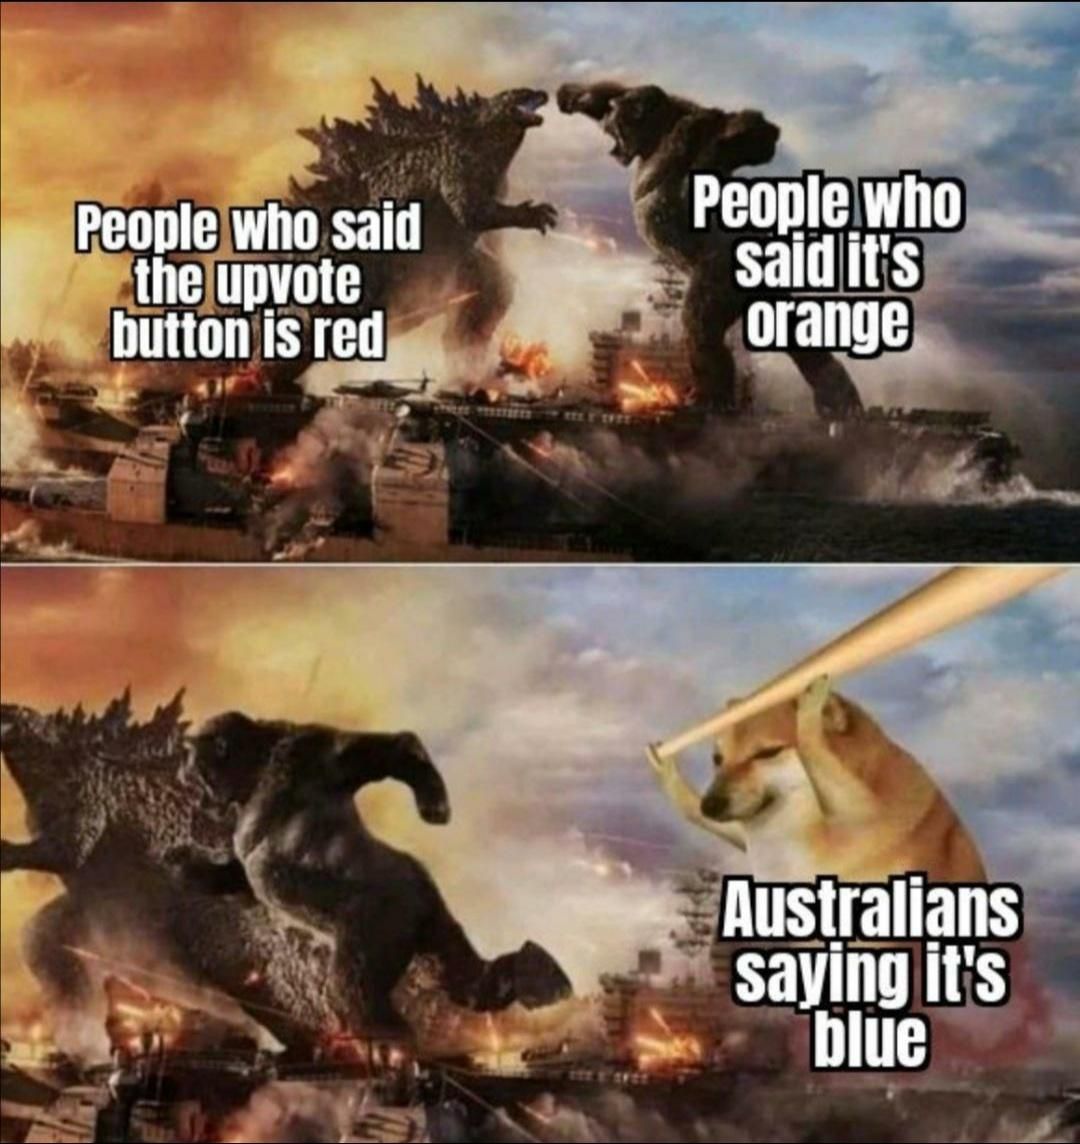 Any Australians here?